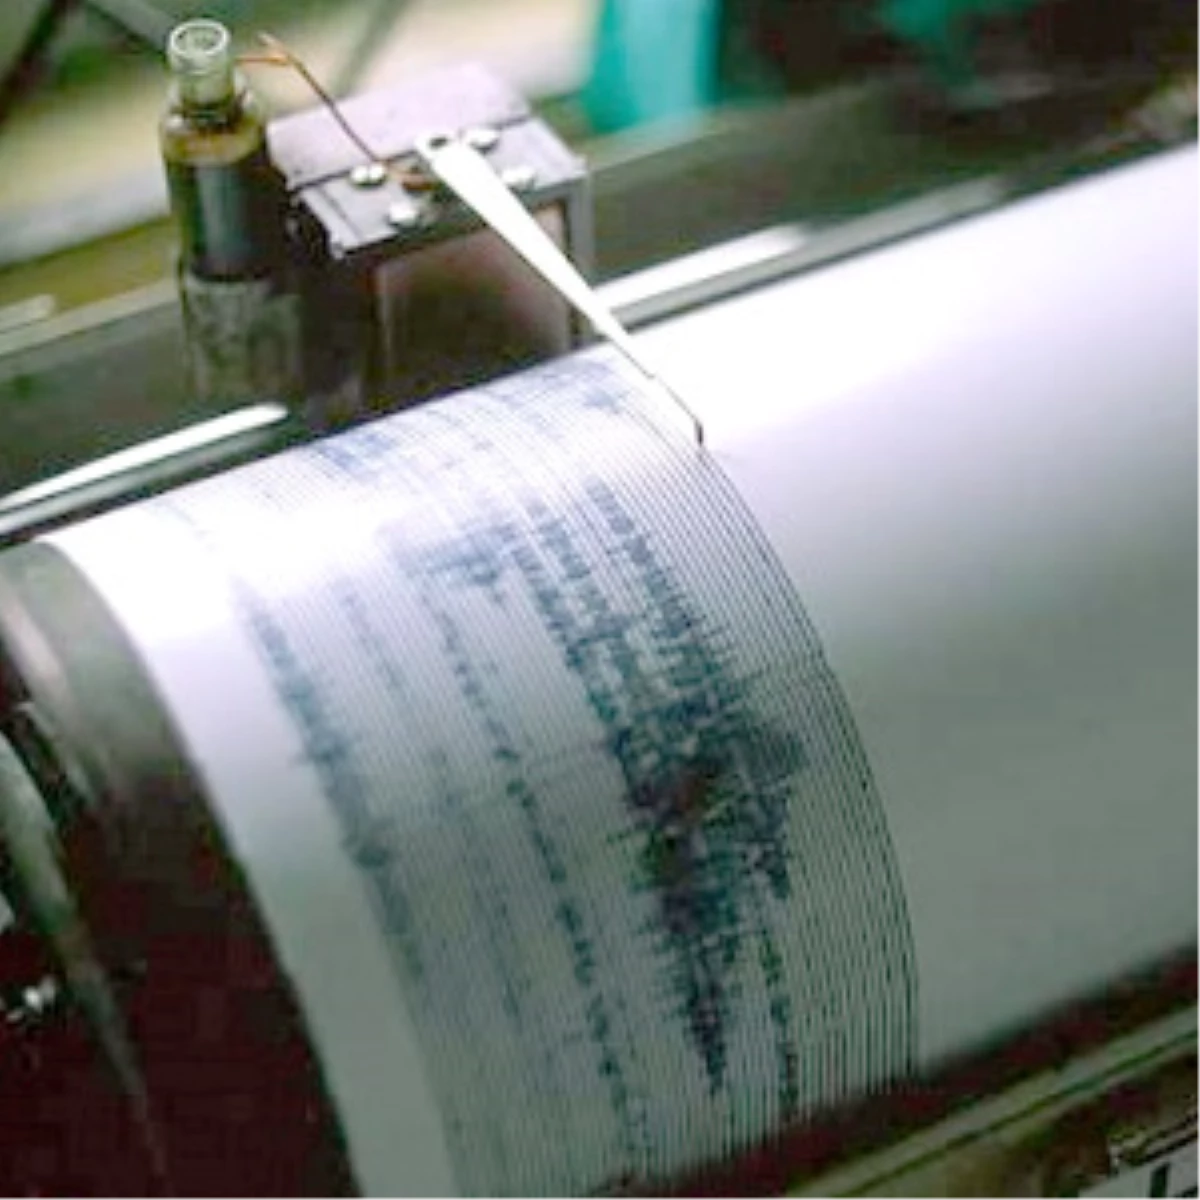 Burdur, 4.8 Büyüklüğünde Depremle Sallandı